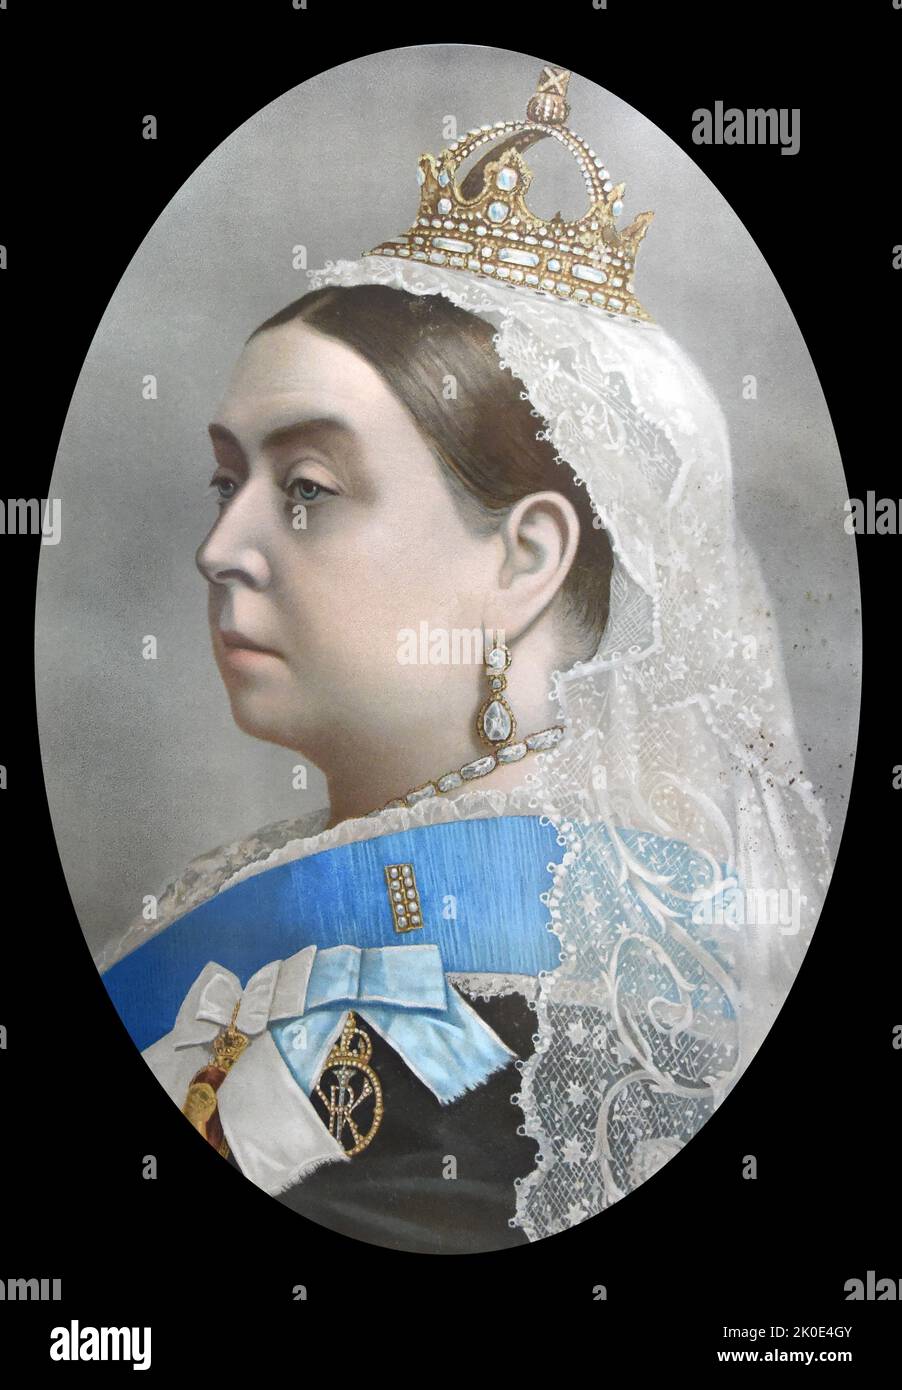 Victoria, Königin des Vereinigten Königreichs von Großbritannien und Irland von 1837 bis zu ihrem Tod im Jahr 1901. Am 1. Mai 1876 übernahm sie den zusätzlichen Titel der Kaiserin von Indien. Bekannt als die viktorianische Ära, war ihre Herrschaft von 63 Jahren und sieben Monaten länger als die ihrer Vorgänger. Stockfoto